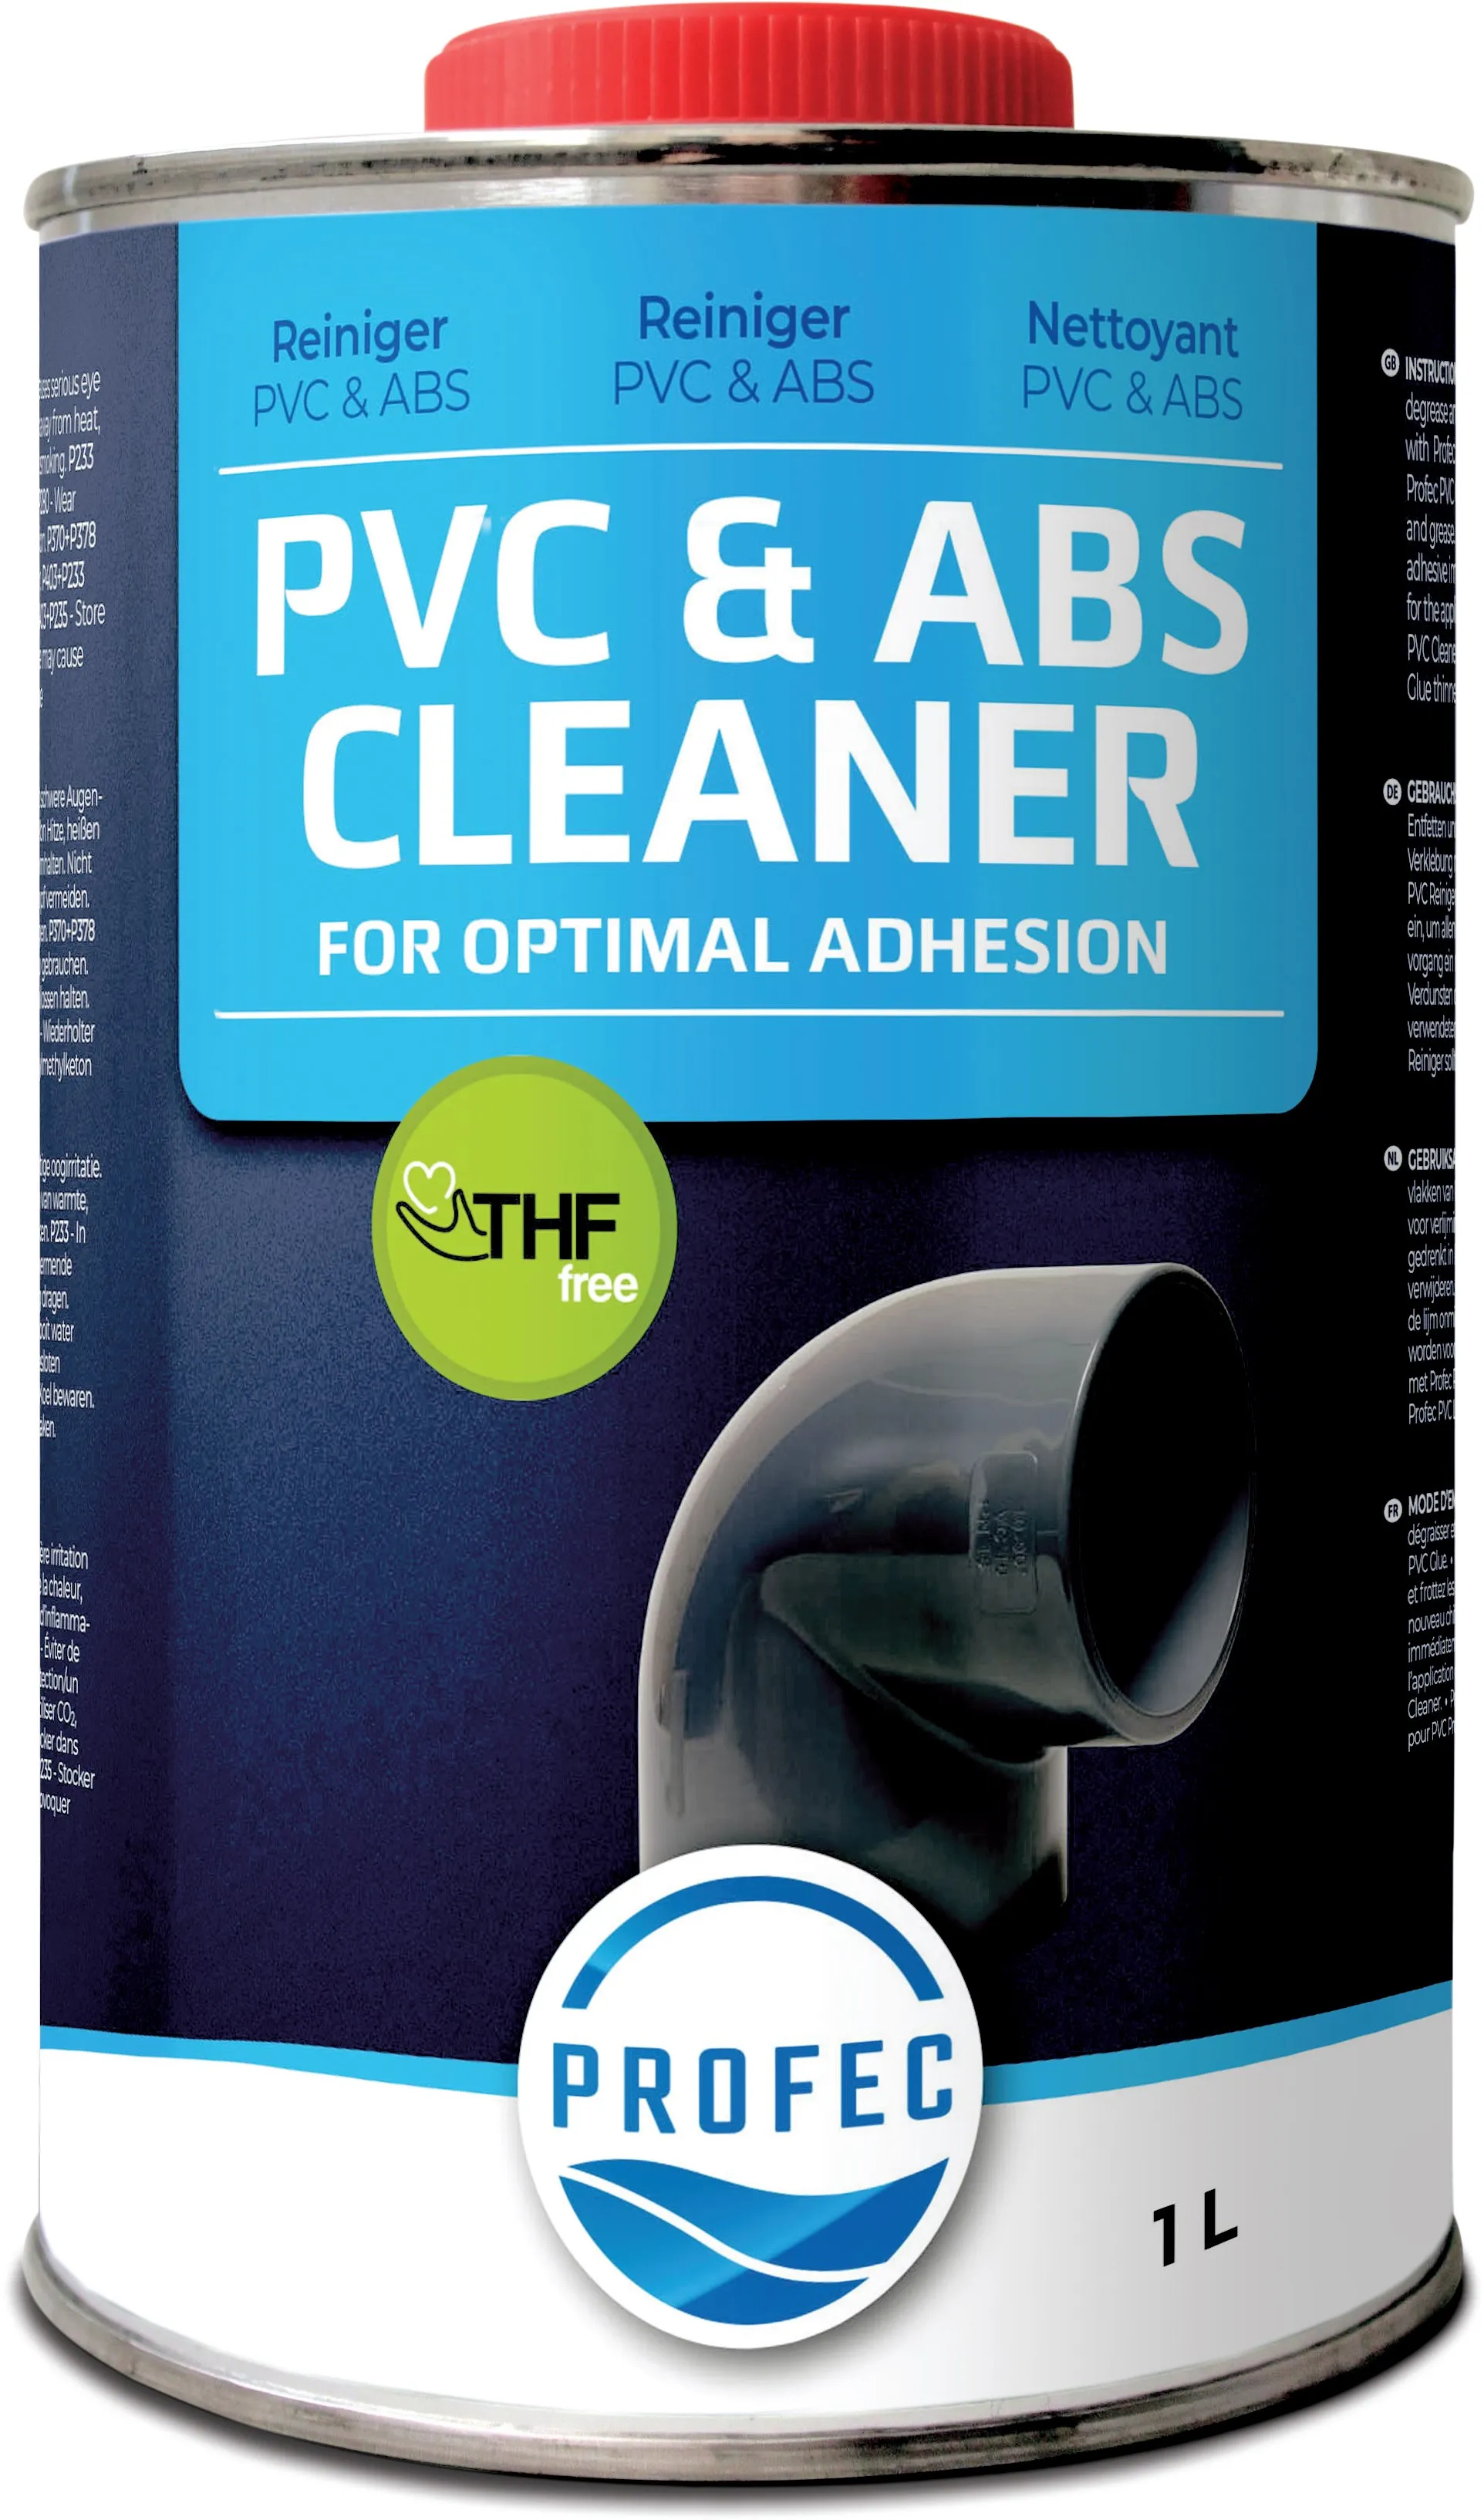 Profec PVC & ABS Reiniger 0,25ltr type Label EN/DE/NL/FR